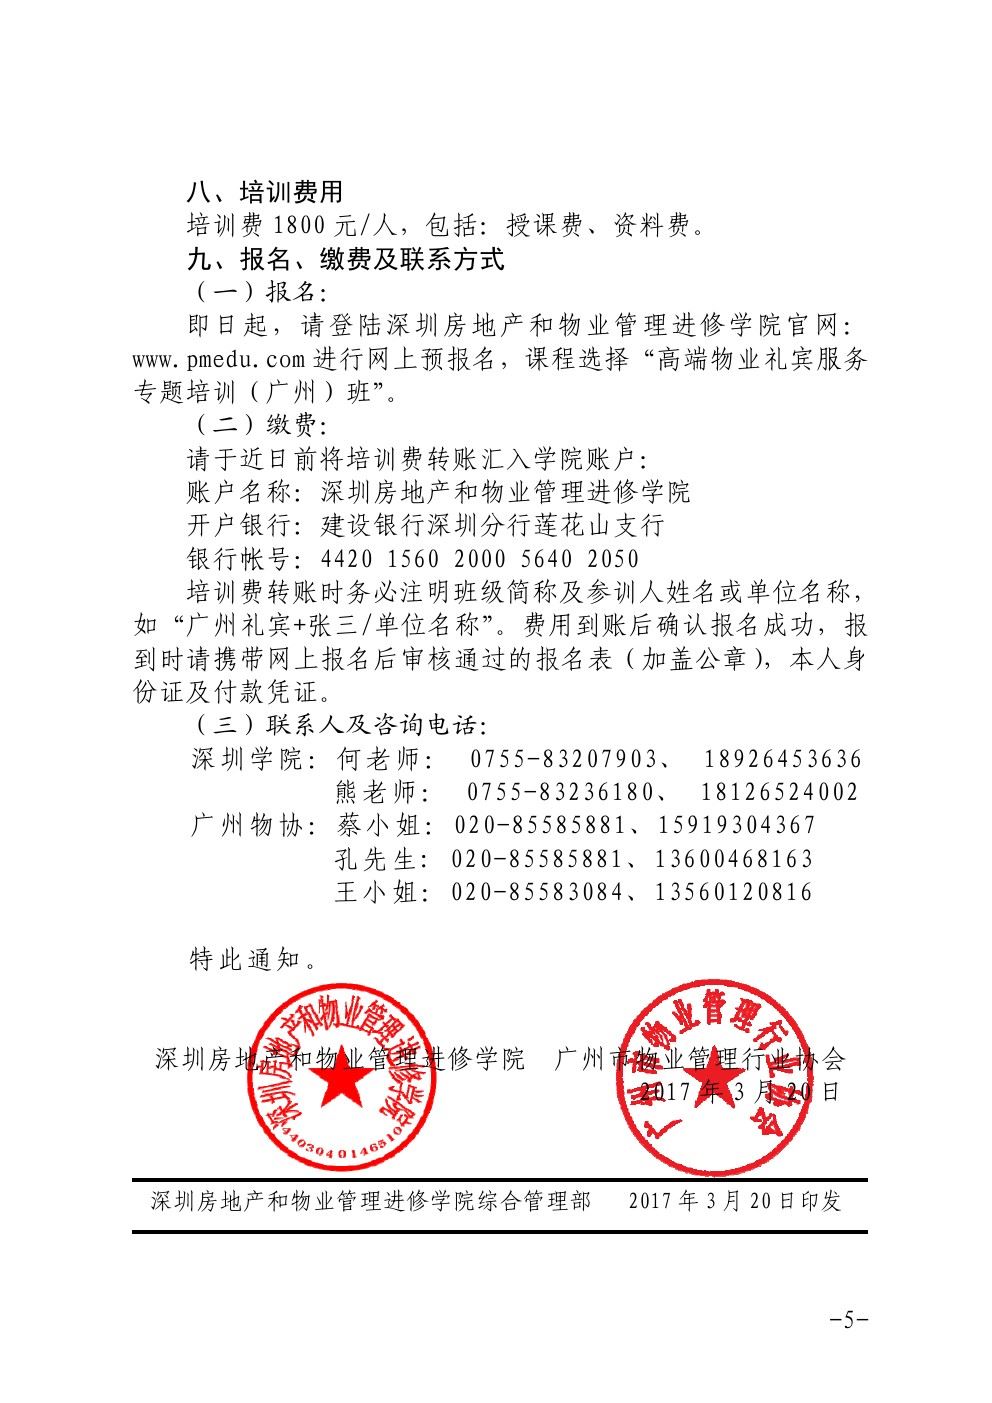 关于在广州举办高端物业礼宾服务专题培训班的通知5-乐虎体育直播